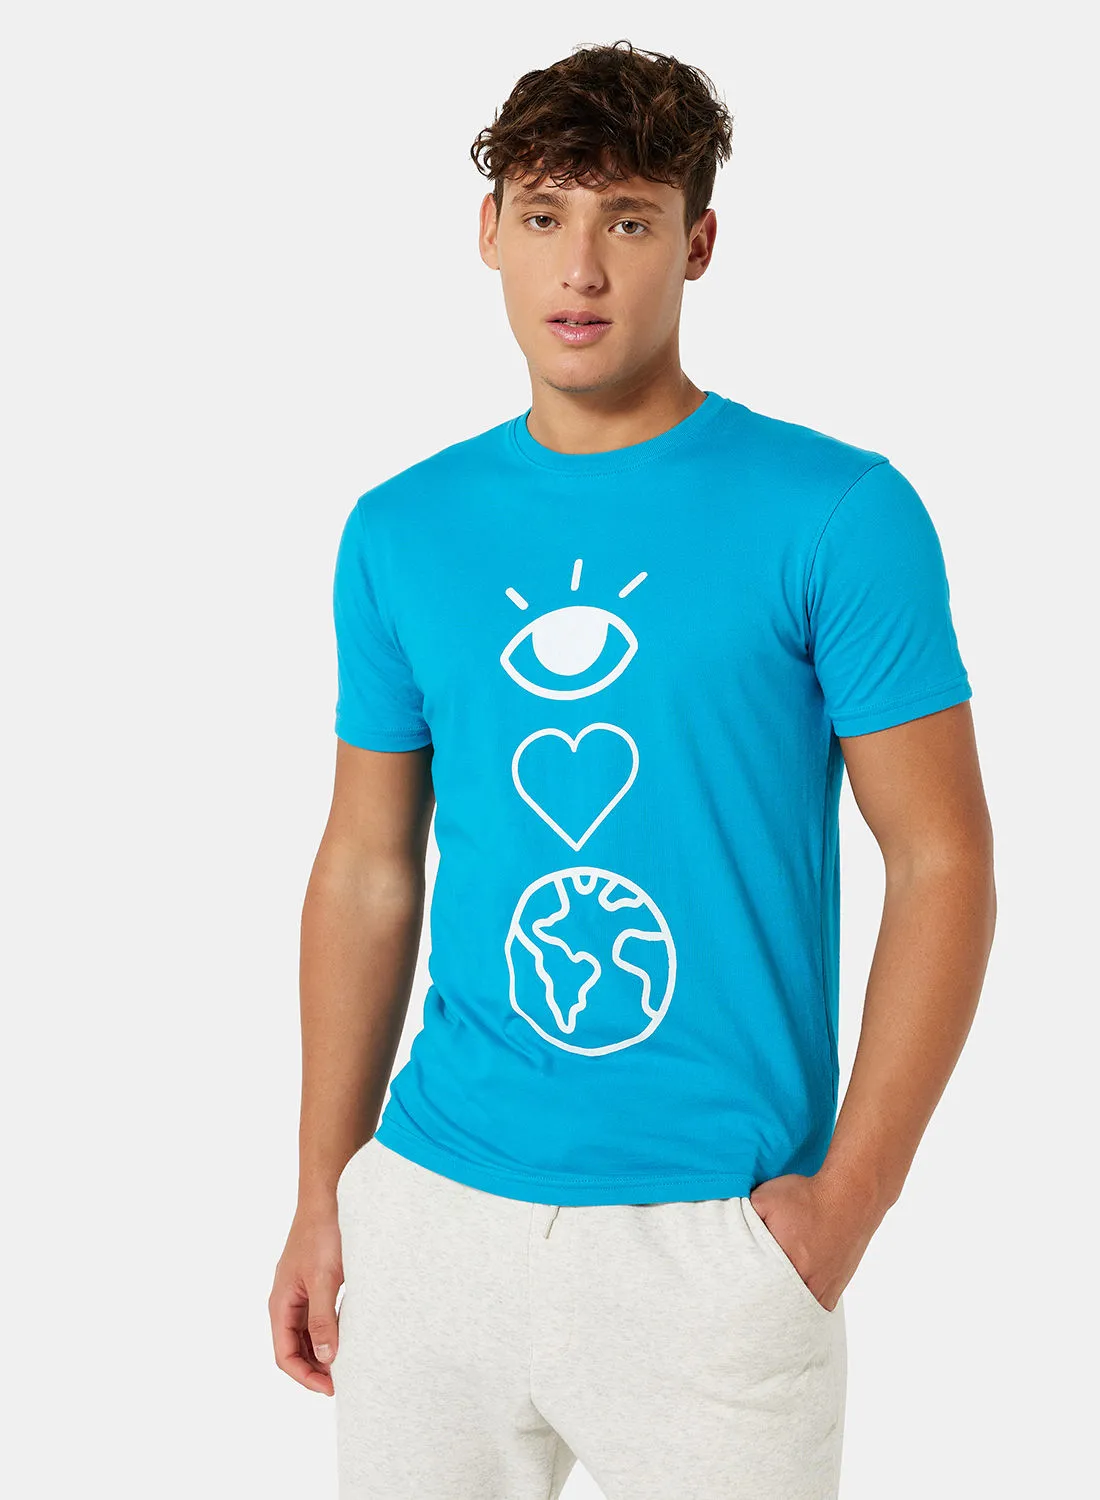 Sivvi x D'Atelier Eco-Friendly Graphic Crew T-Shirt Blue